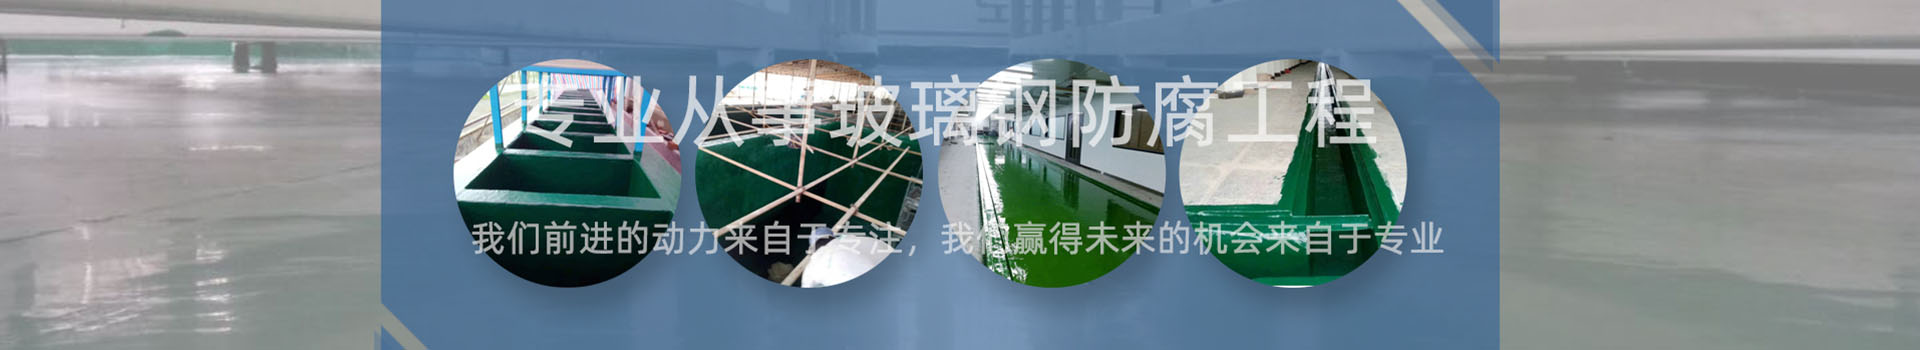 珠海电子厂污水池防腐工程